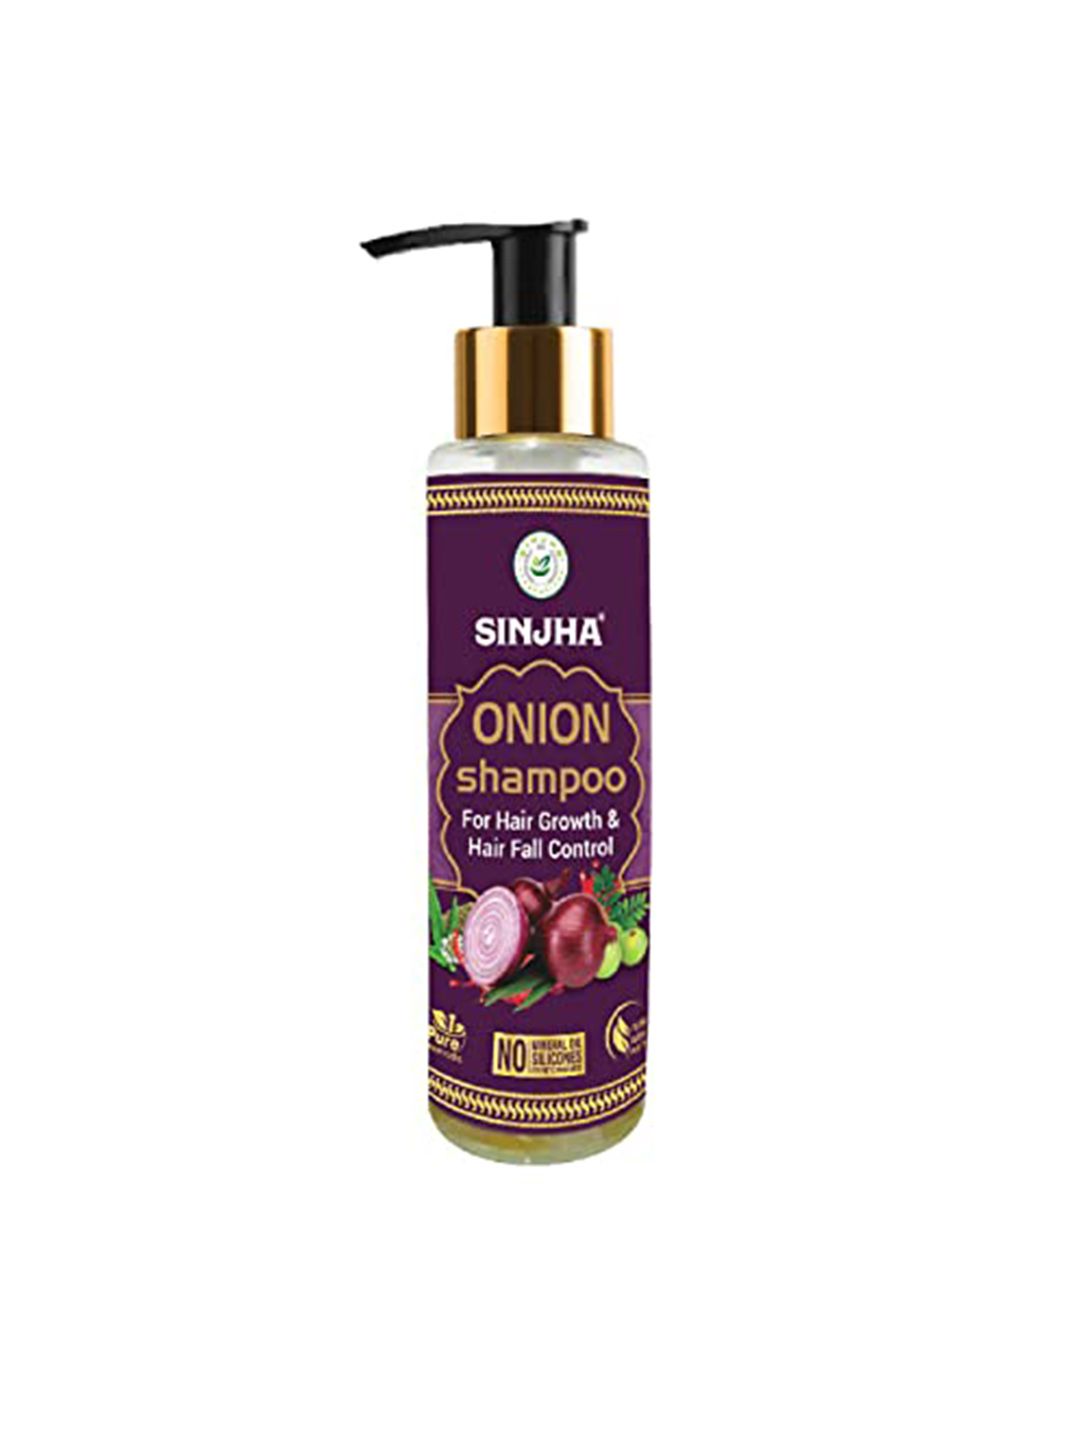 SINJHA Onion Shampoo For Hair Growth & Hair Fall Control - 100ml Price in India